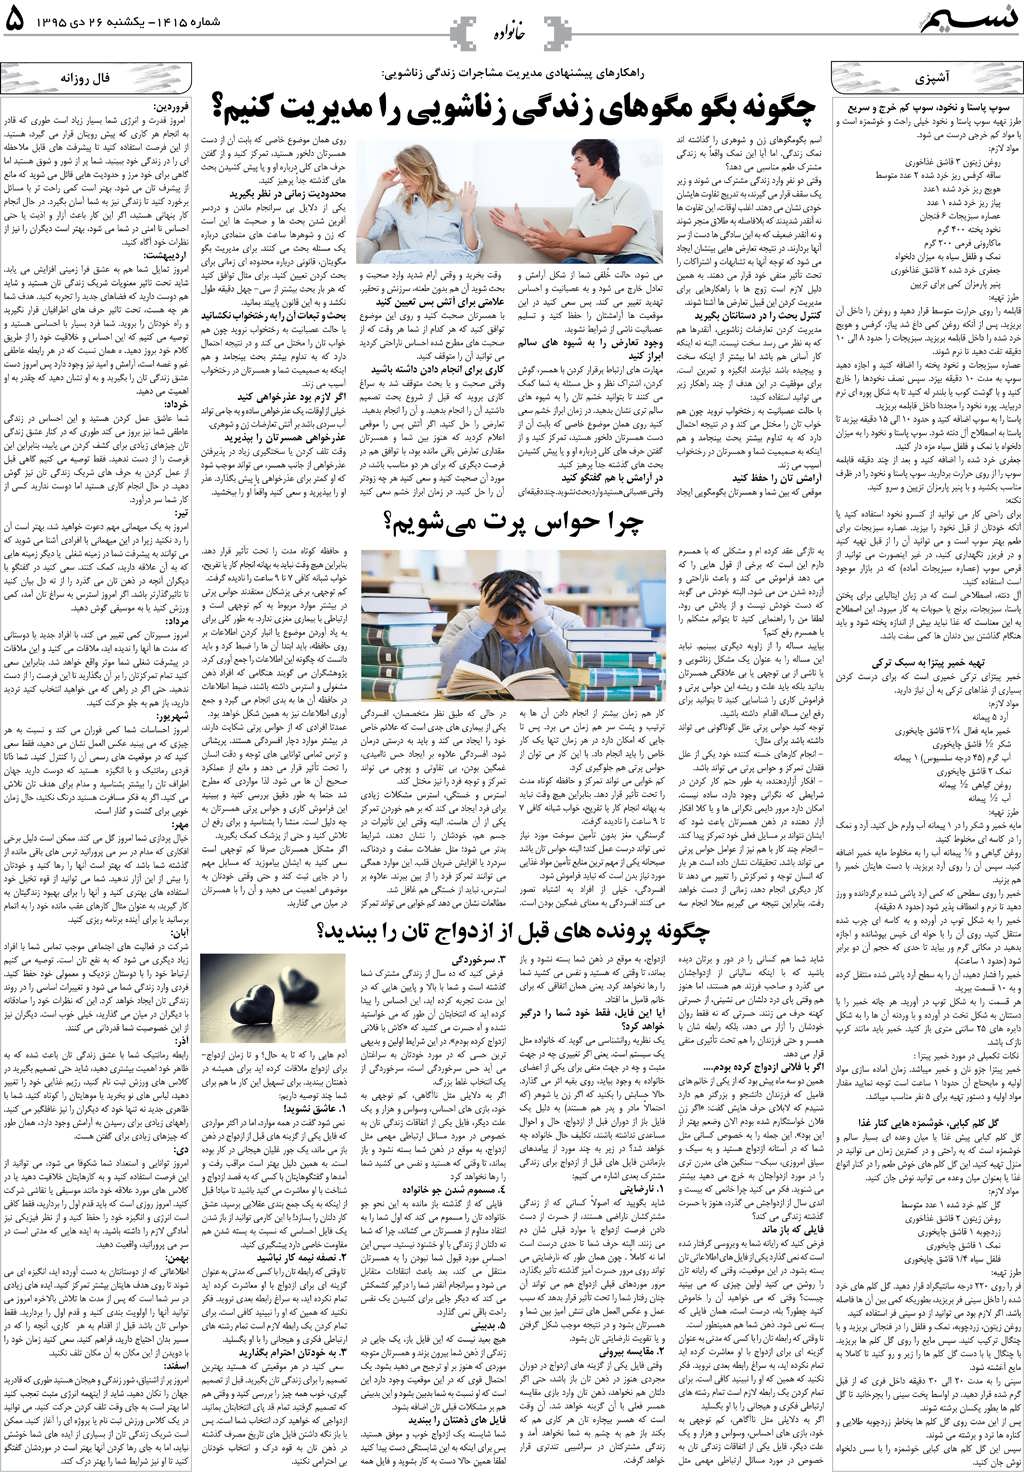 صفحه خانواده روزنامه نسیم شماره 1415